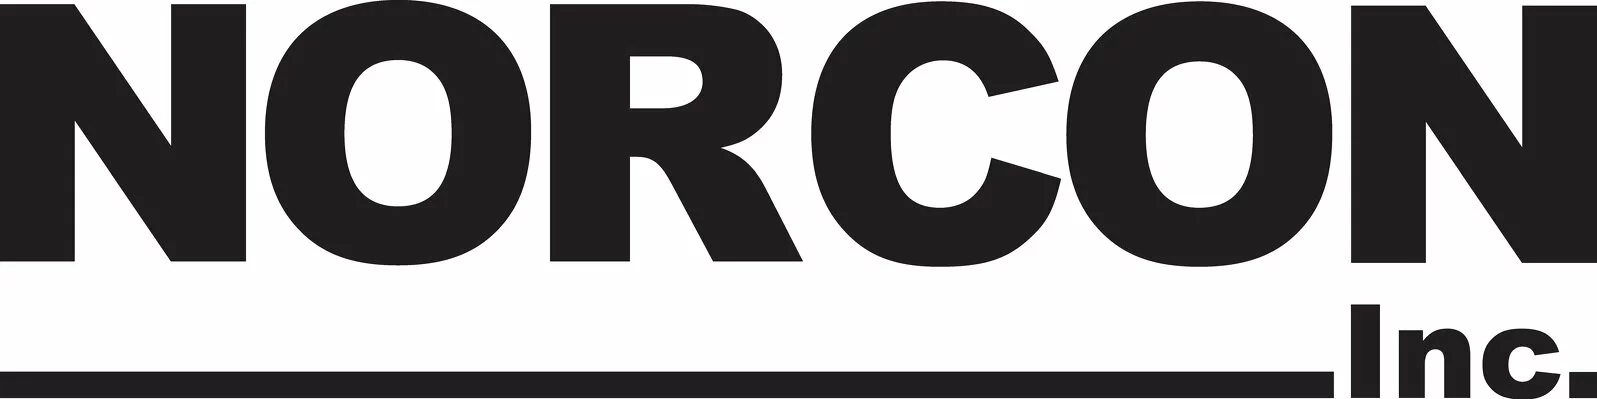 Norcon Inc. logo.